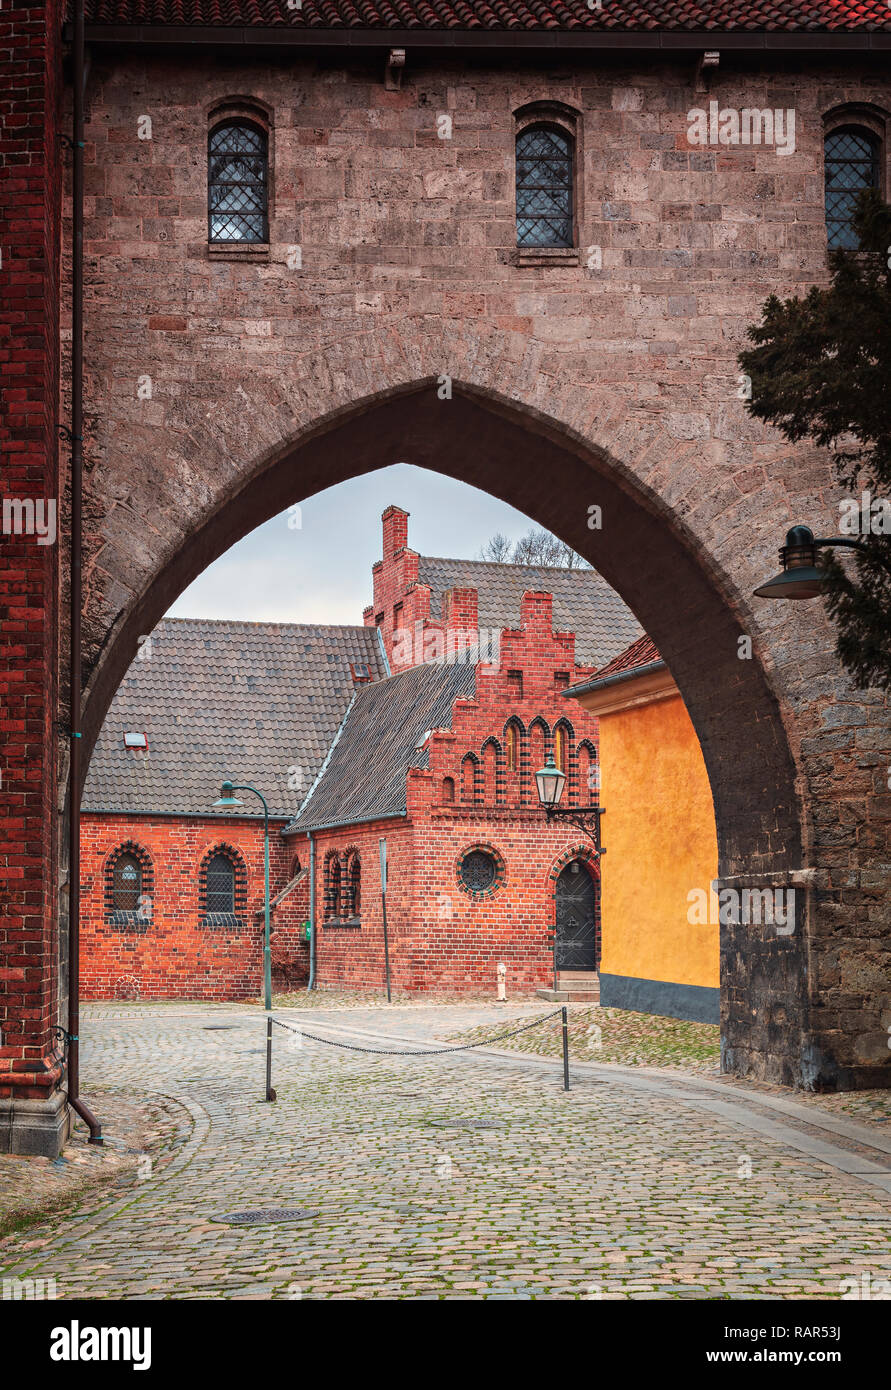 Detalles arquitectónicos en el centro histórico de la ciudad de Roskilde, Dinamarca. Foto de stock